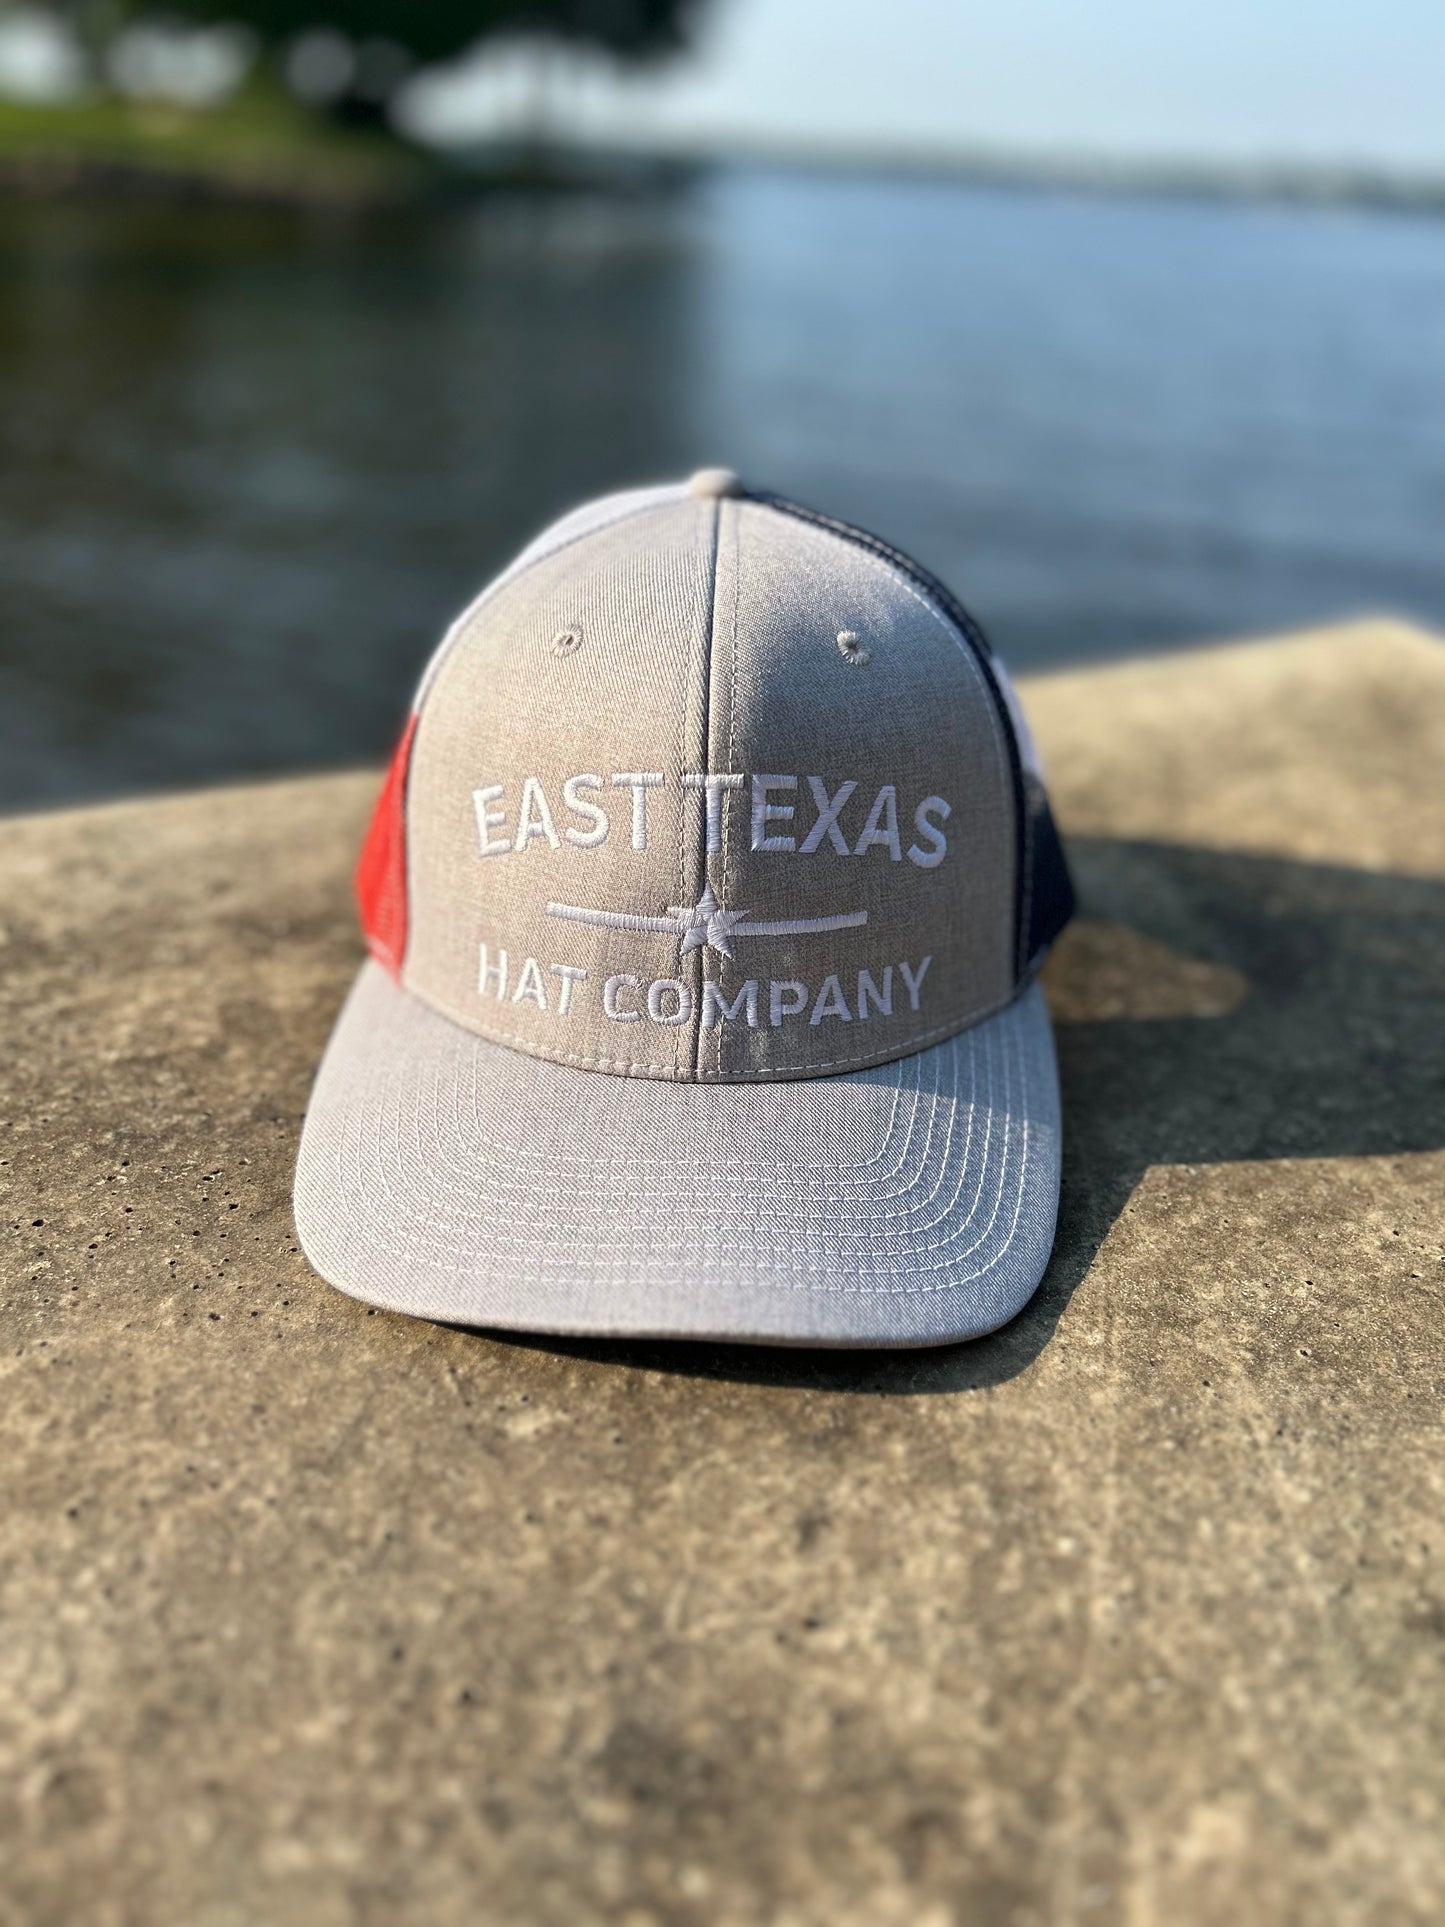 The East Texan